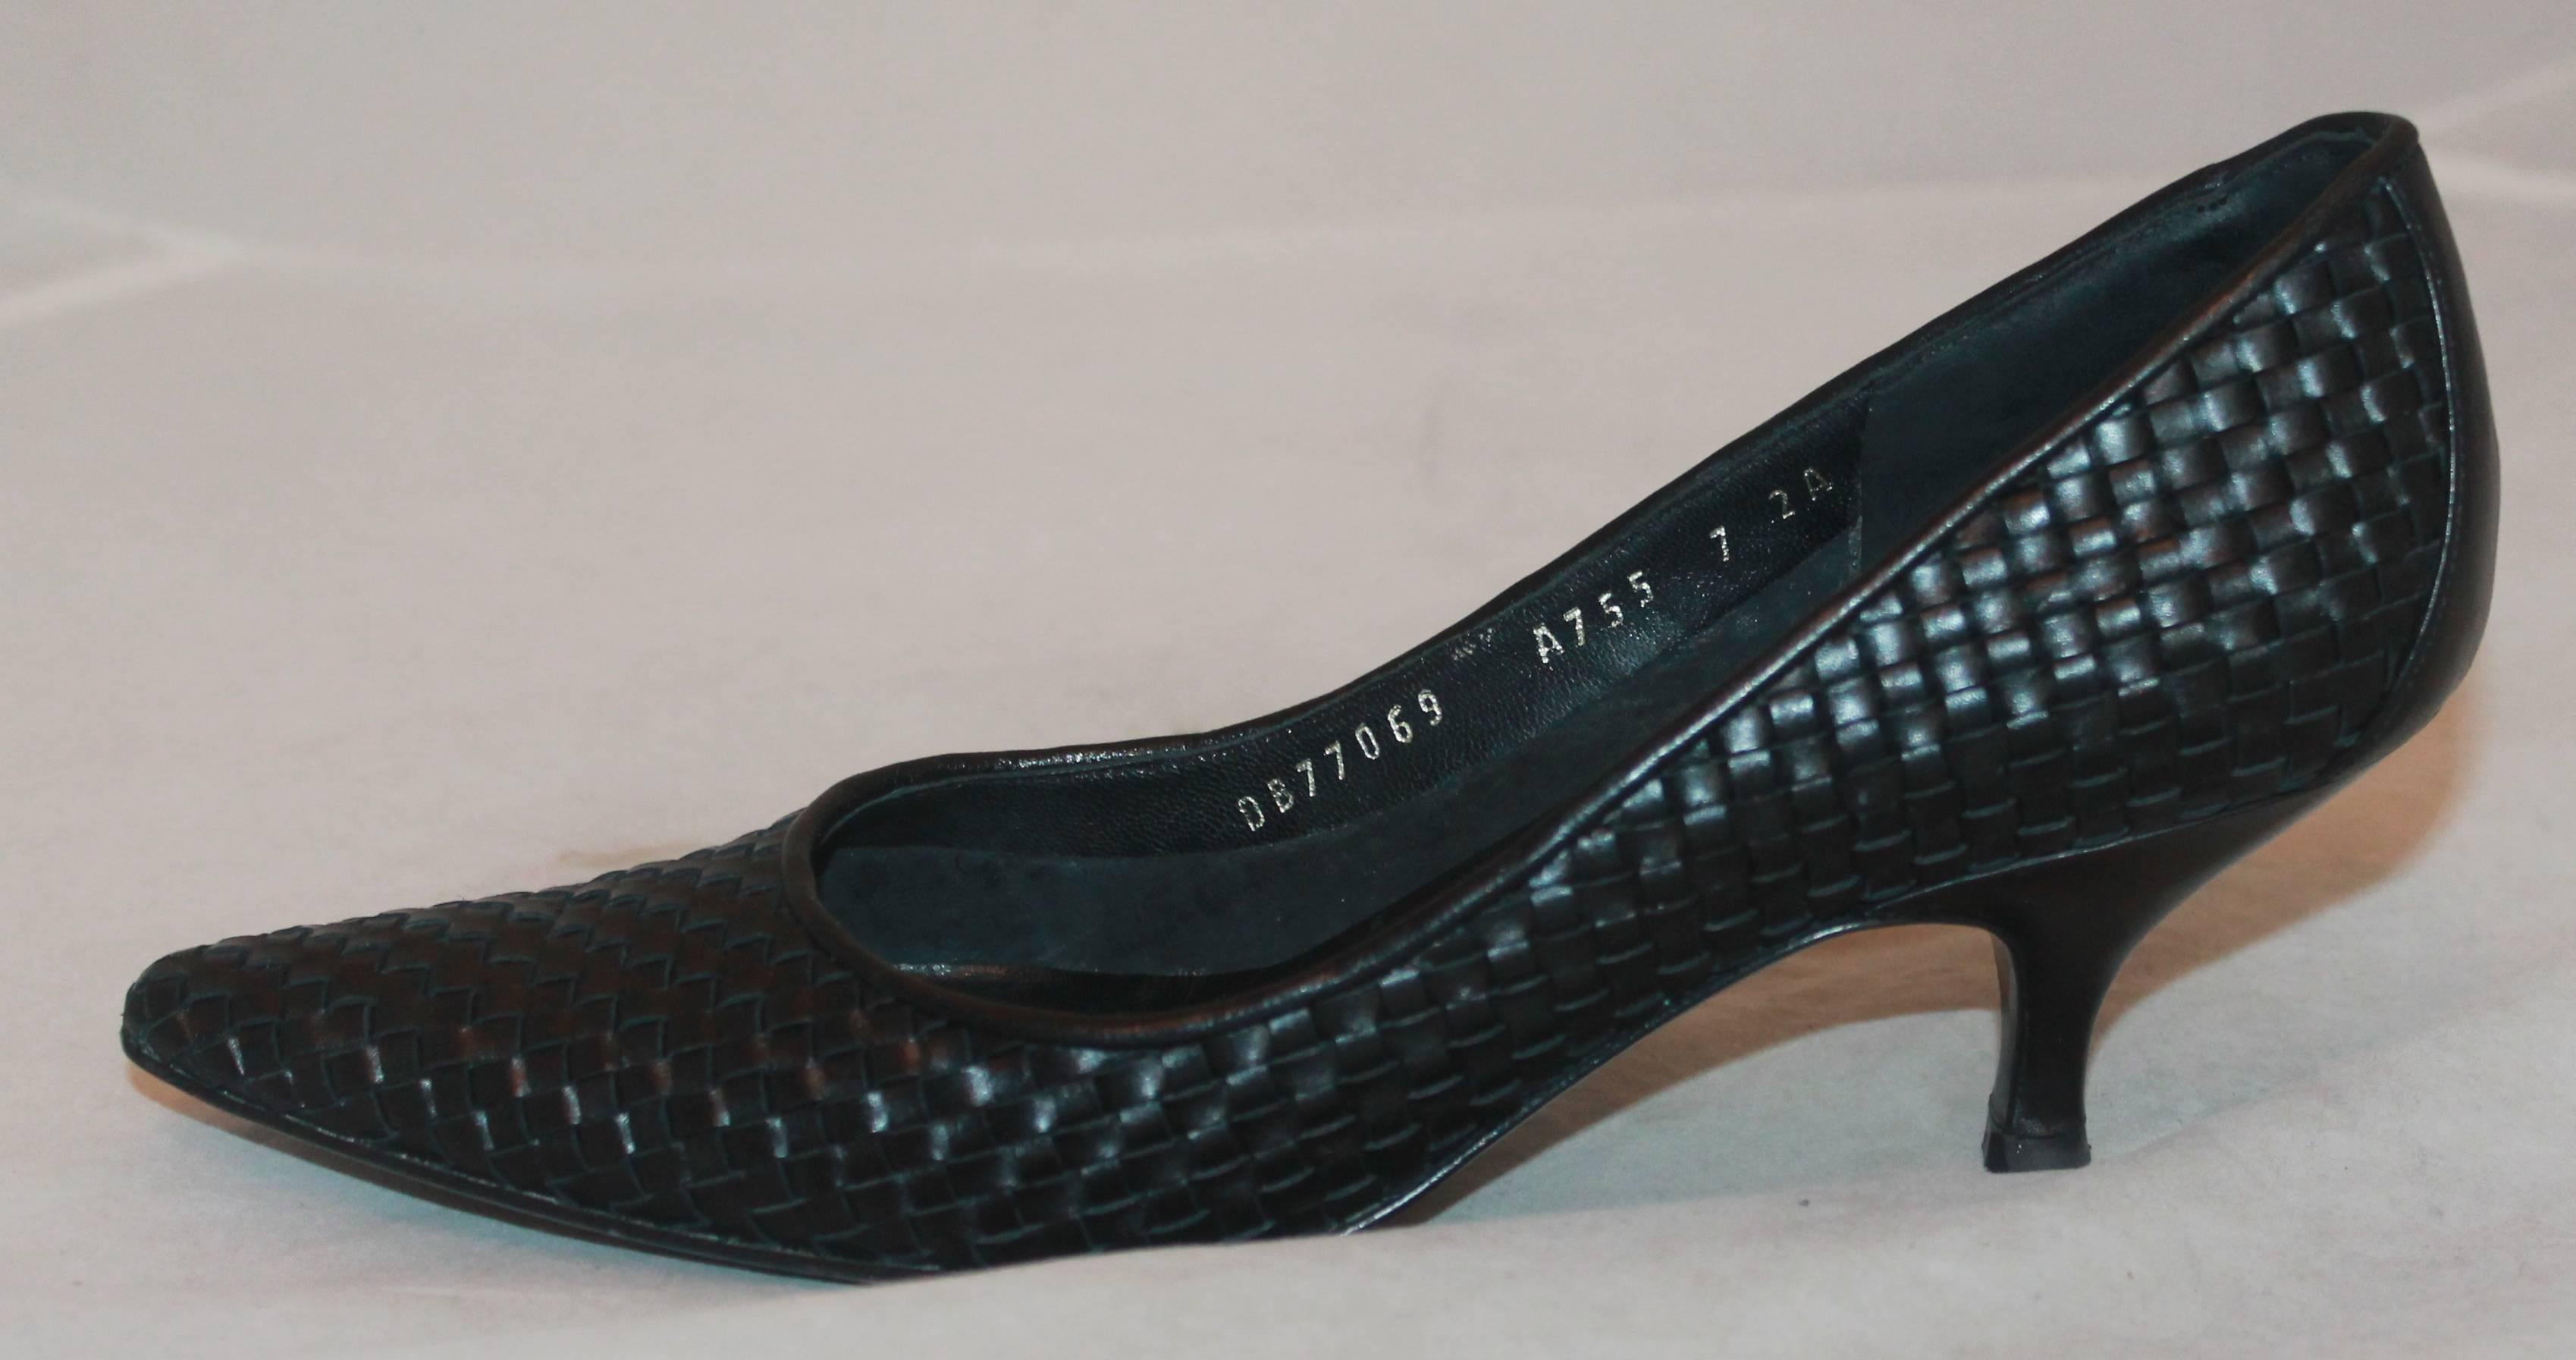 Salvatore Ferragamo Schwarzer gewebter Leder Pumps - 7AA.  Diese Schuhe sind in ausgezeichnetem Zustand mit nur sichtbaren Verschleiß an den Sohlen.  Sie sind aus schönem schwarzem Leder, haben ein kompliziertes gewebtes Muster, eine abgerundete,